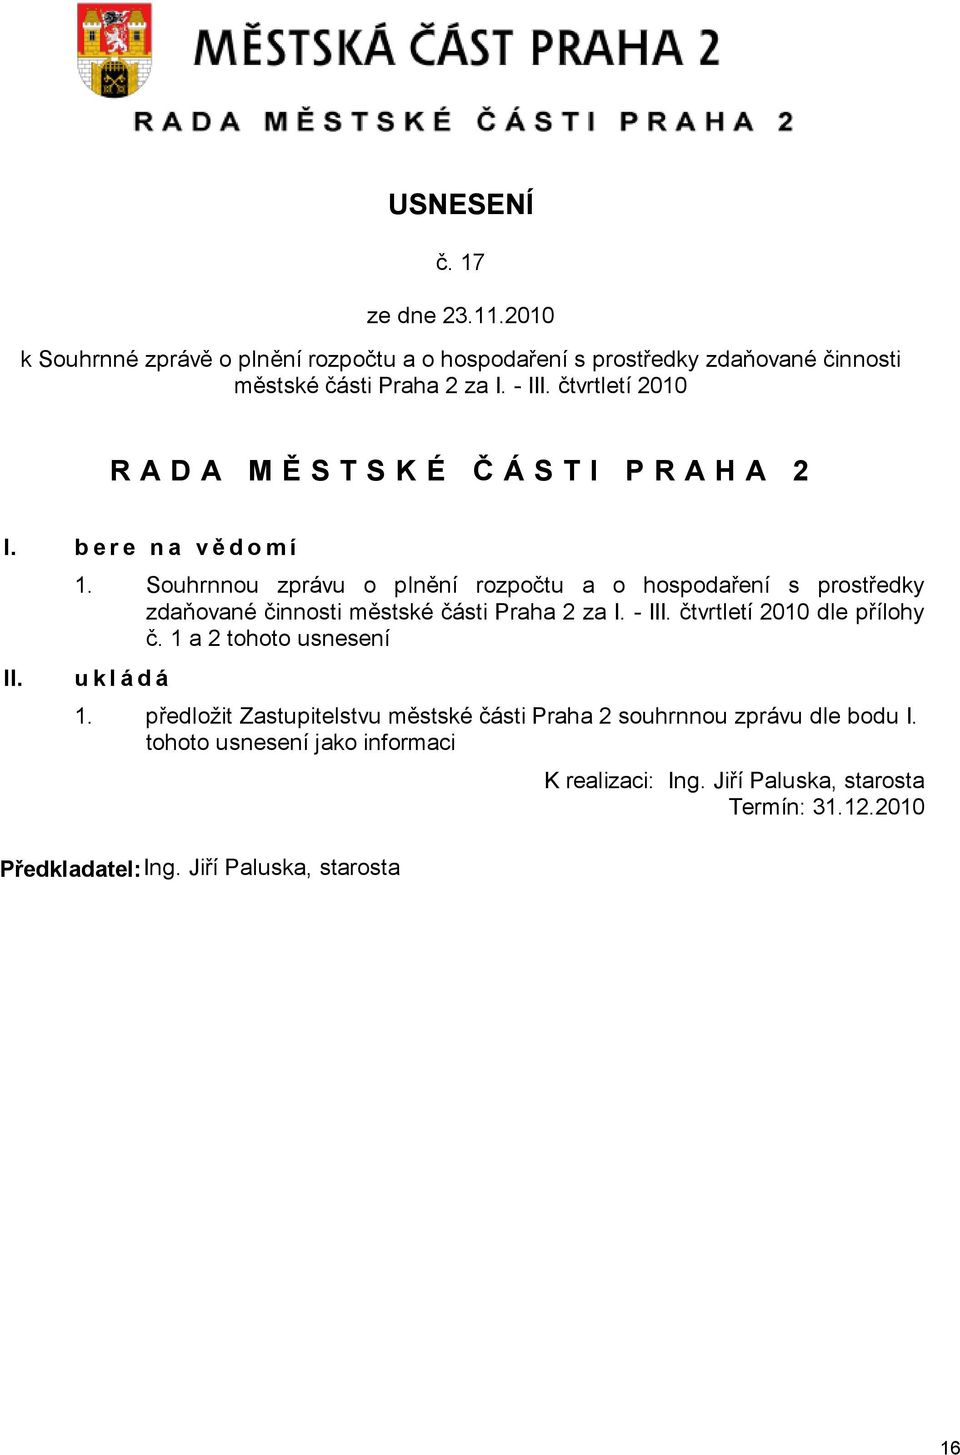 Souhrnnou zprávu o plnění rozpočtu a o hospodaření s prostředky zdaňované činnosti městské části Praha 2 za I. - III. čtvrtletí 2010 dle přílohy č.